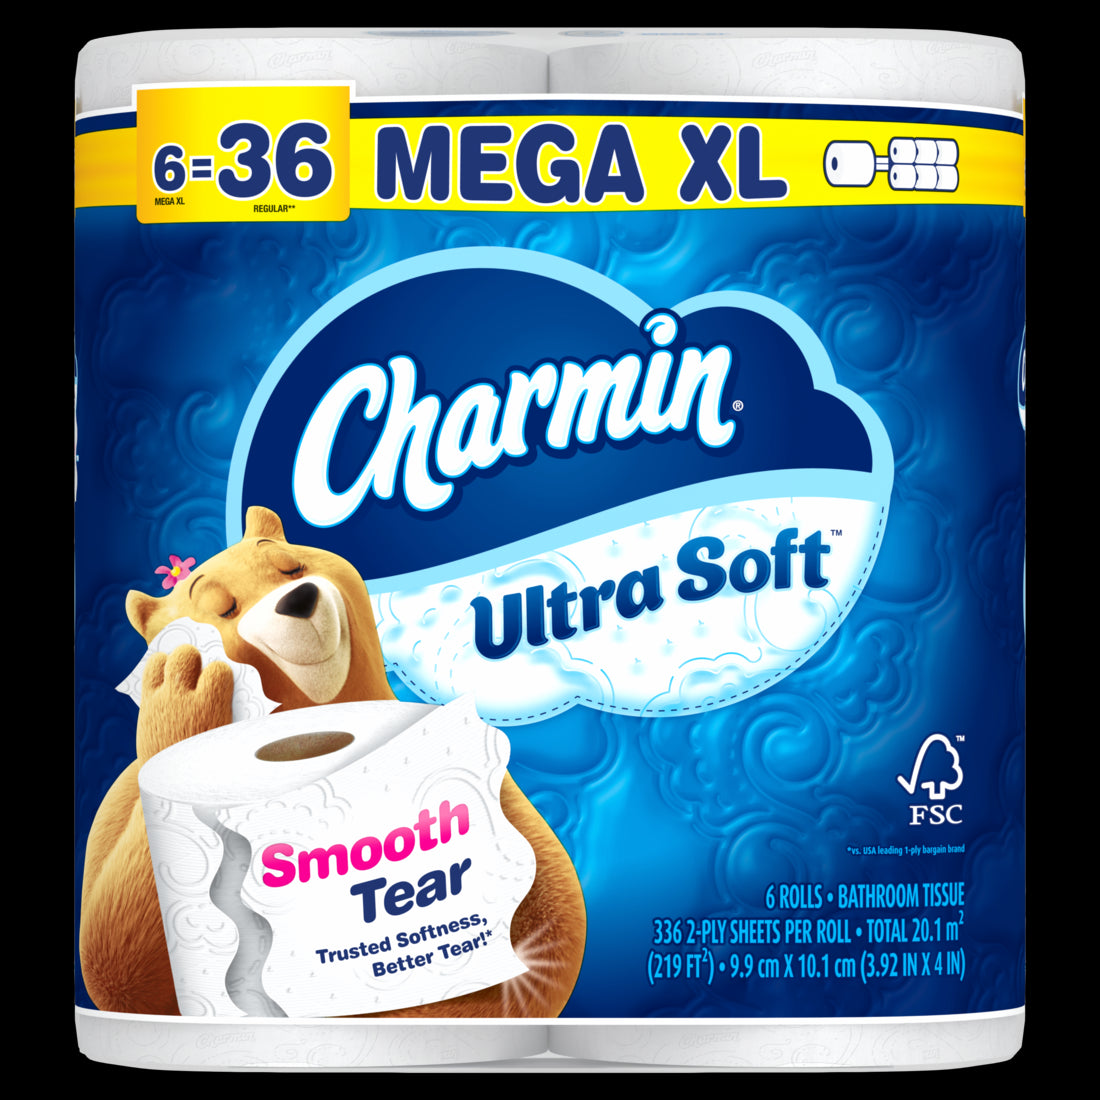 Charmin Ultra Soft Toilet Paper 6 Mega XL Rolls 336 Sheets Per Roll - 6ct/1pk